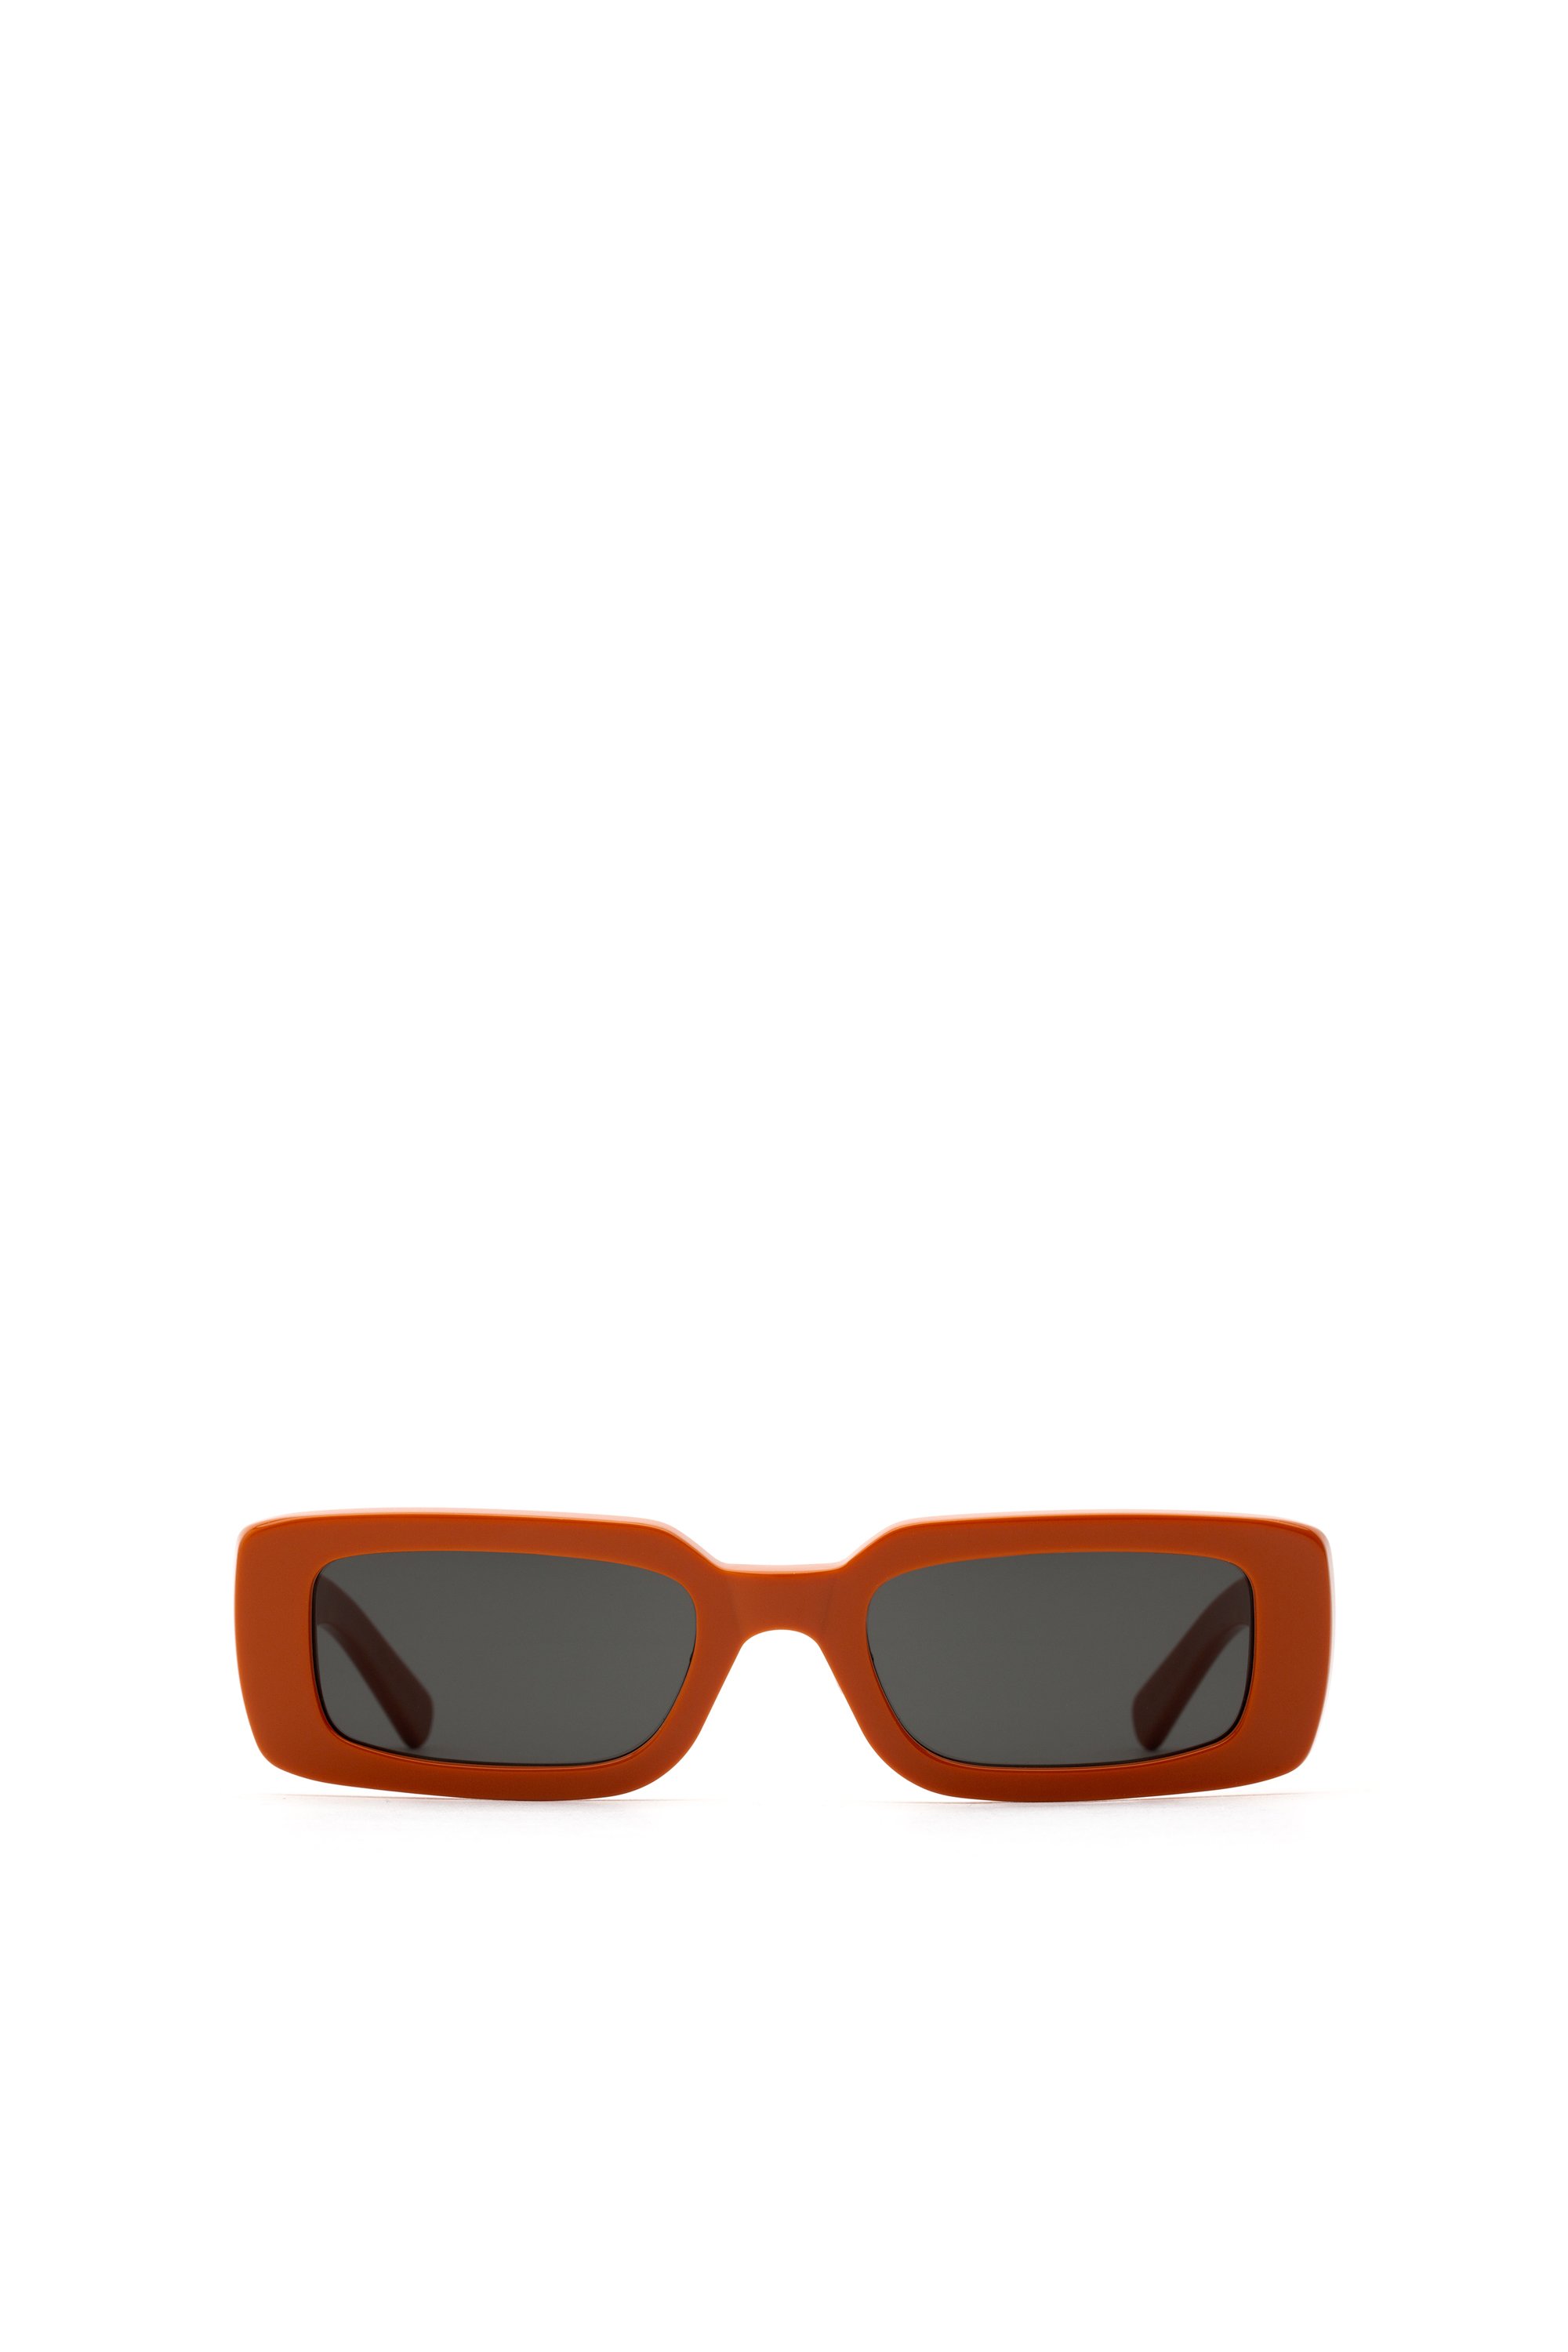 Diesel leesbril van 0,25 tot 3,50 donkergroen/ oranje 58mm dl5061 096 Accessoires Zonnebrillen & Eyewear Leesbrillen 